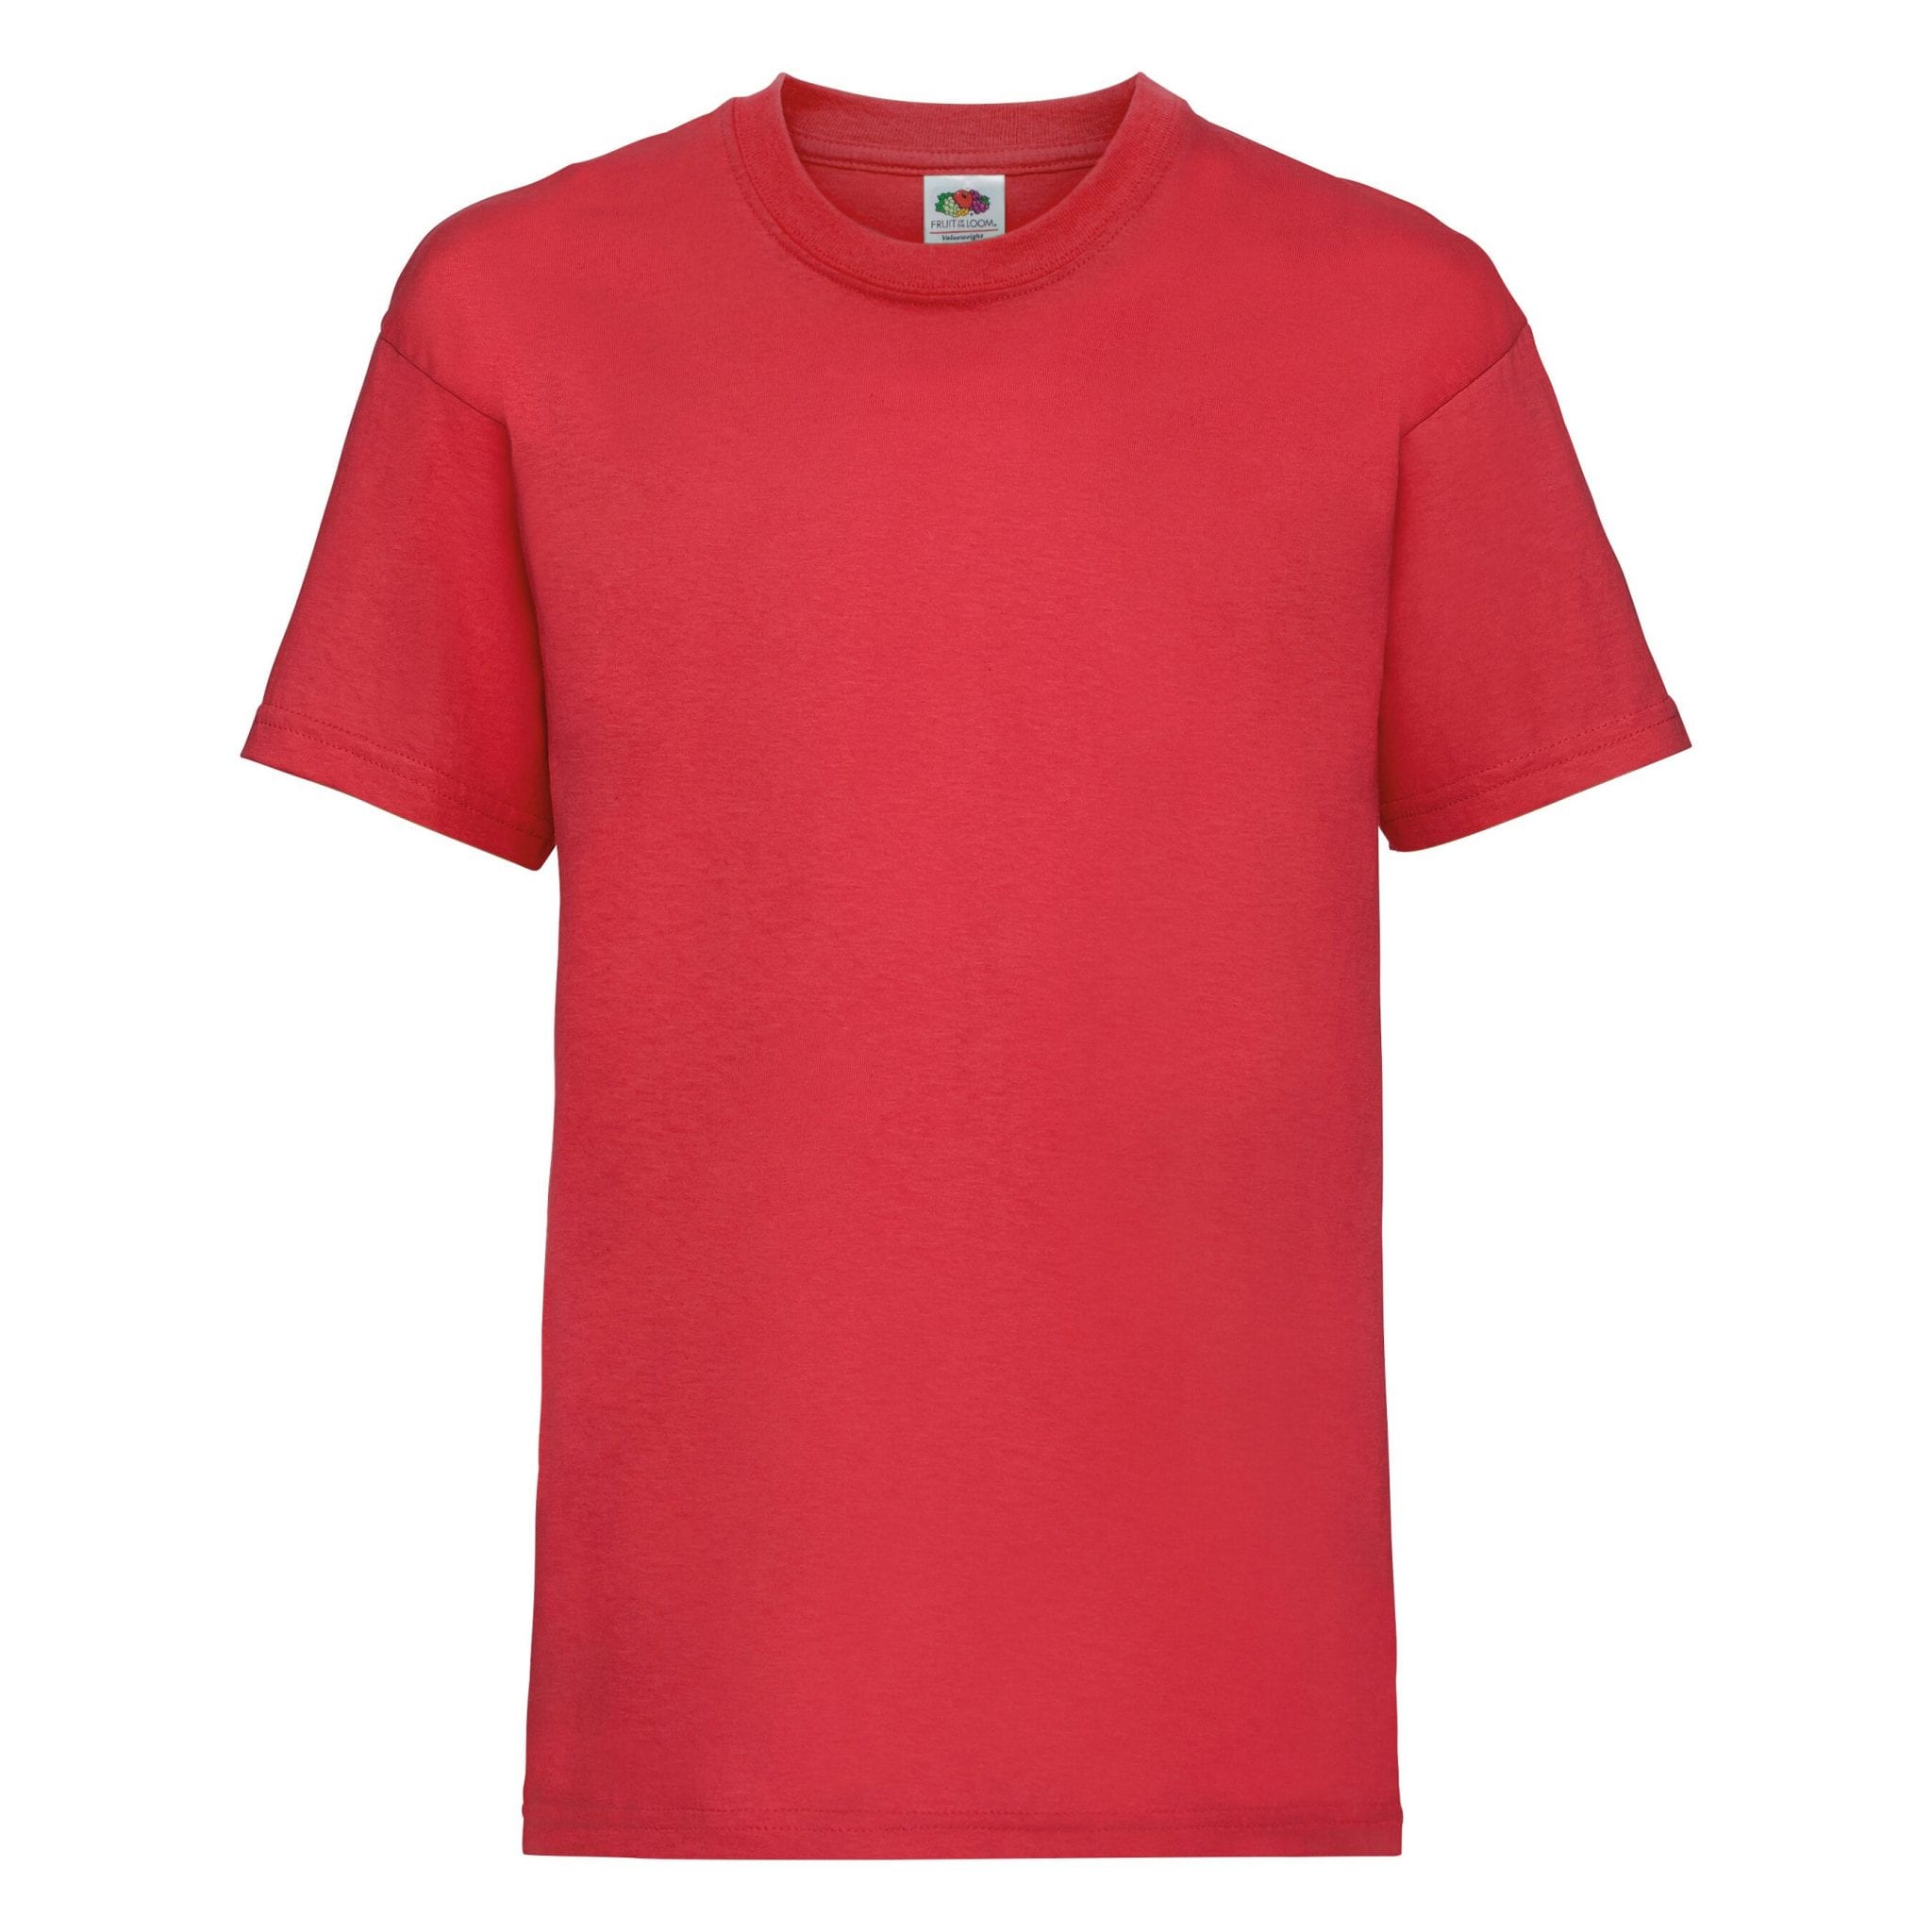 red print shirt